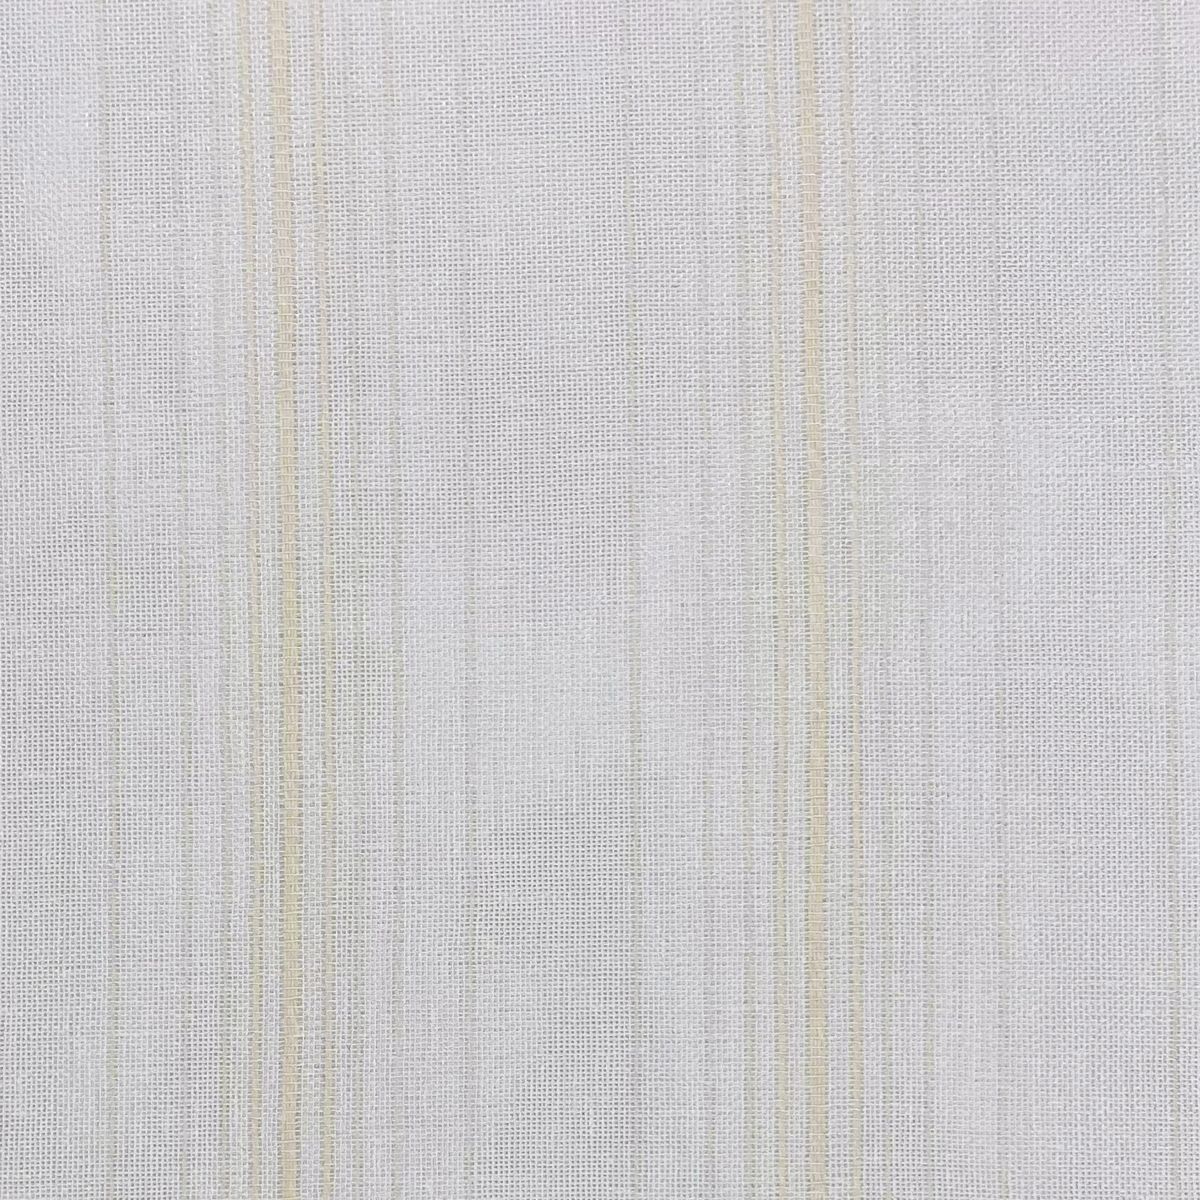 Corfu Ivory Fabric by Chatham Glyn